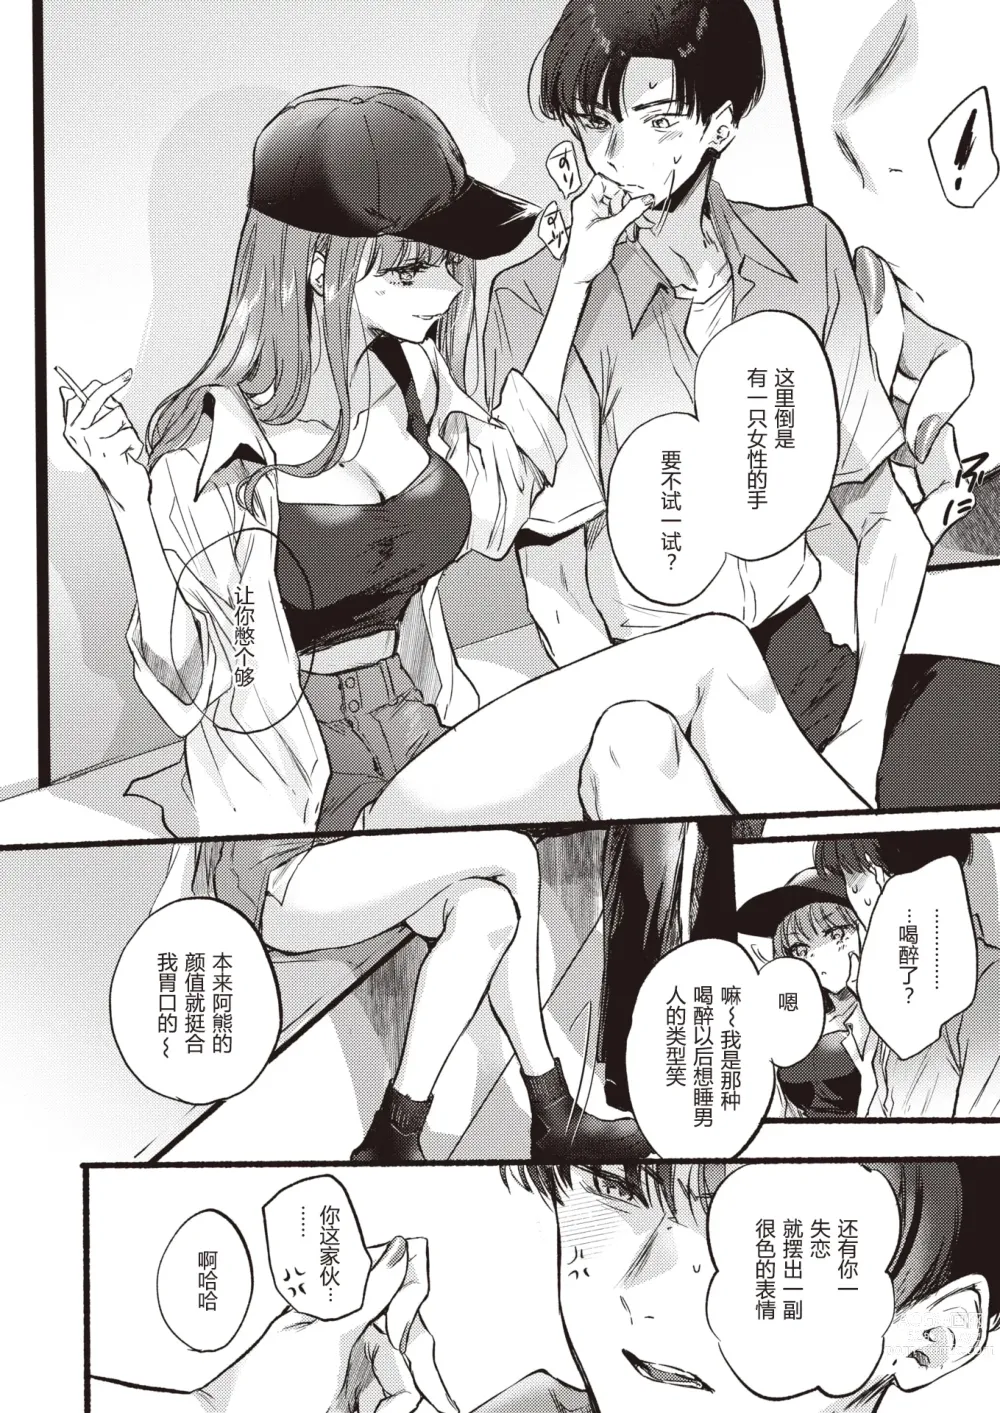 Page 7 of manga Himetomo - The secret fetish!